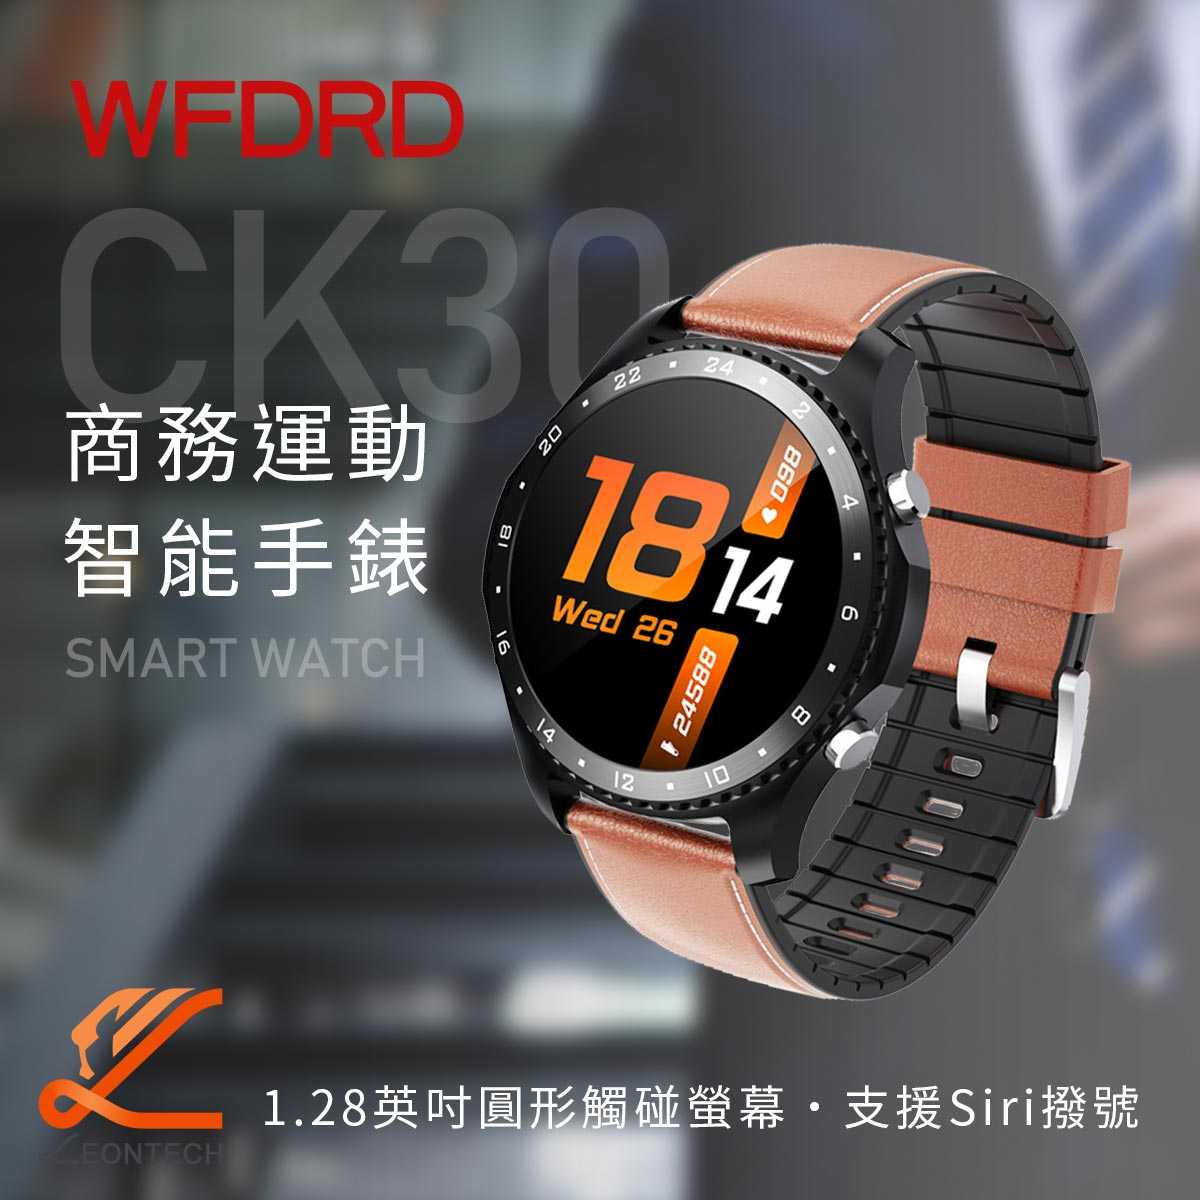 SMART CK30智慧手錶 支援Siri撥號 多種運動模式 運動手錶